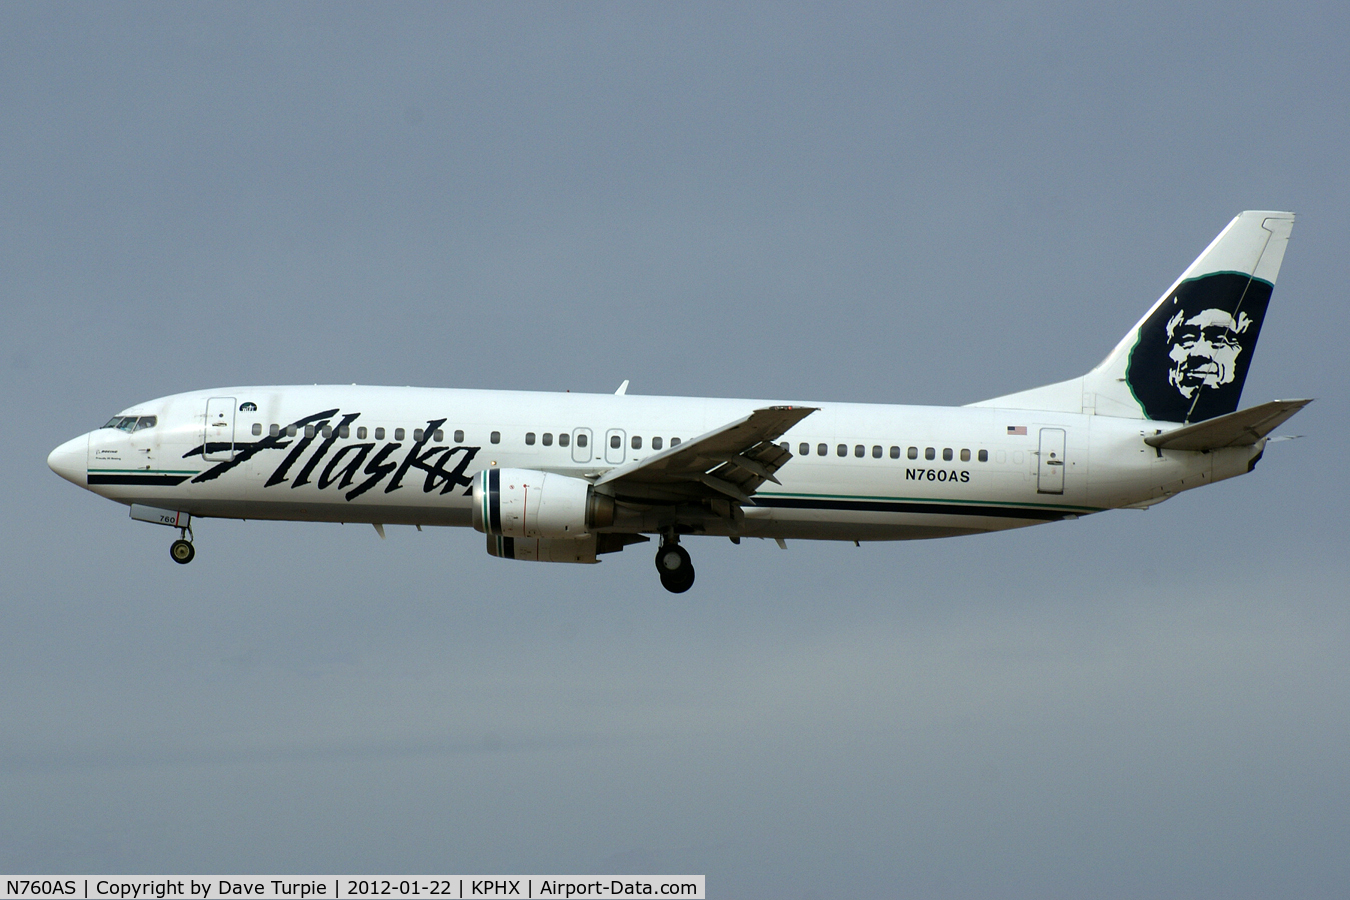 N760AS, 1992 Boeing 737-4Q8 C/N 25098, With Swift Air as N807TJ since May 2018.